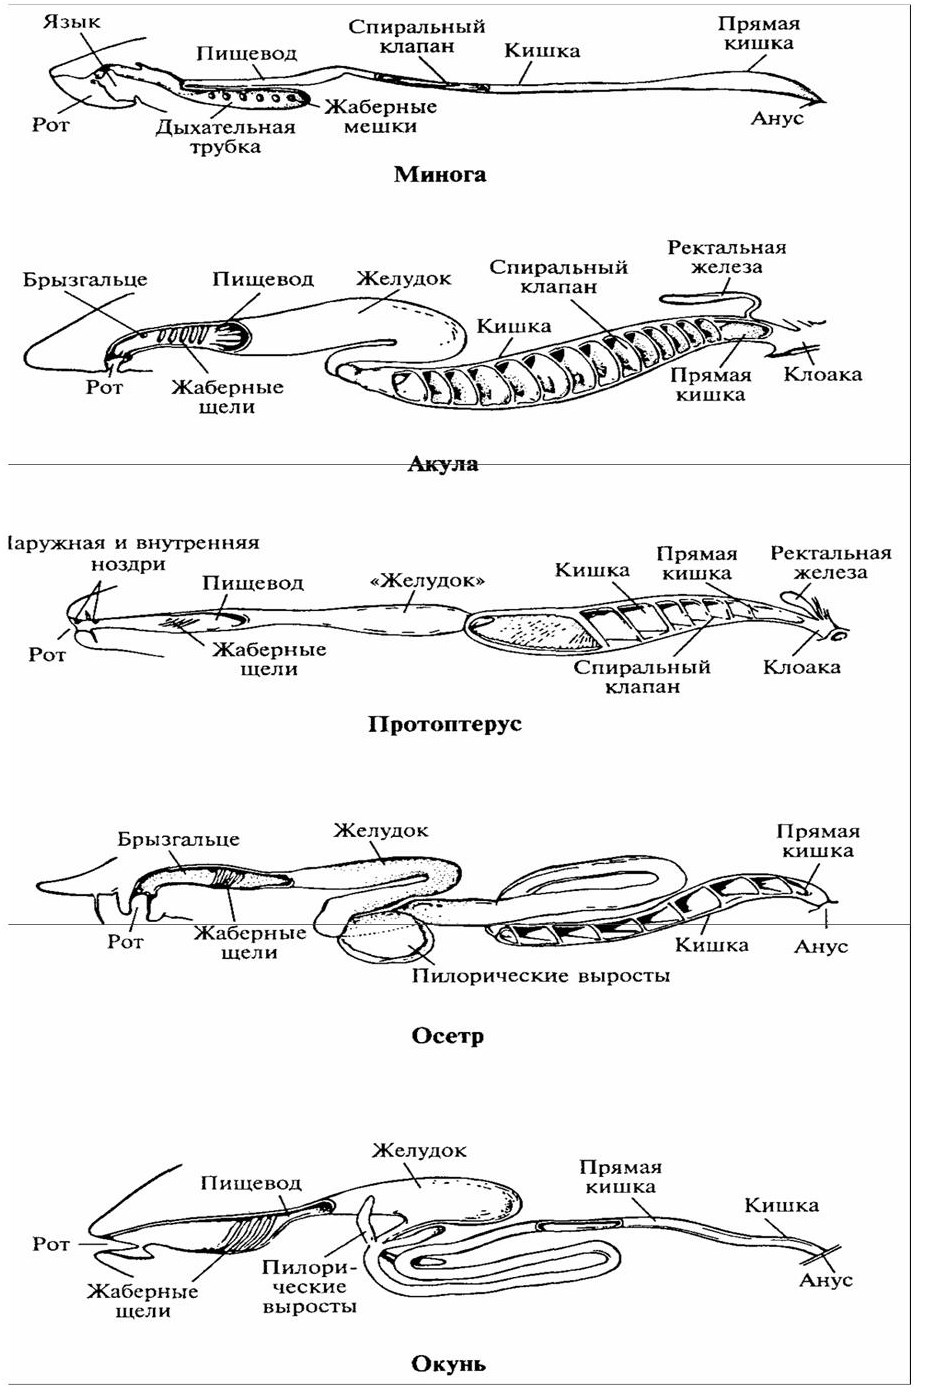 Филогенез систем. Филогенез пищеварительной системы рыб. Эволюция пищеварительной системы схема. Эволюция пищеварительной системы позвоночных животных. Схема строения пищеварительной системы позвоночных.